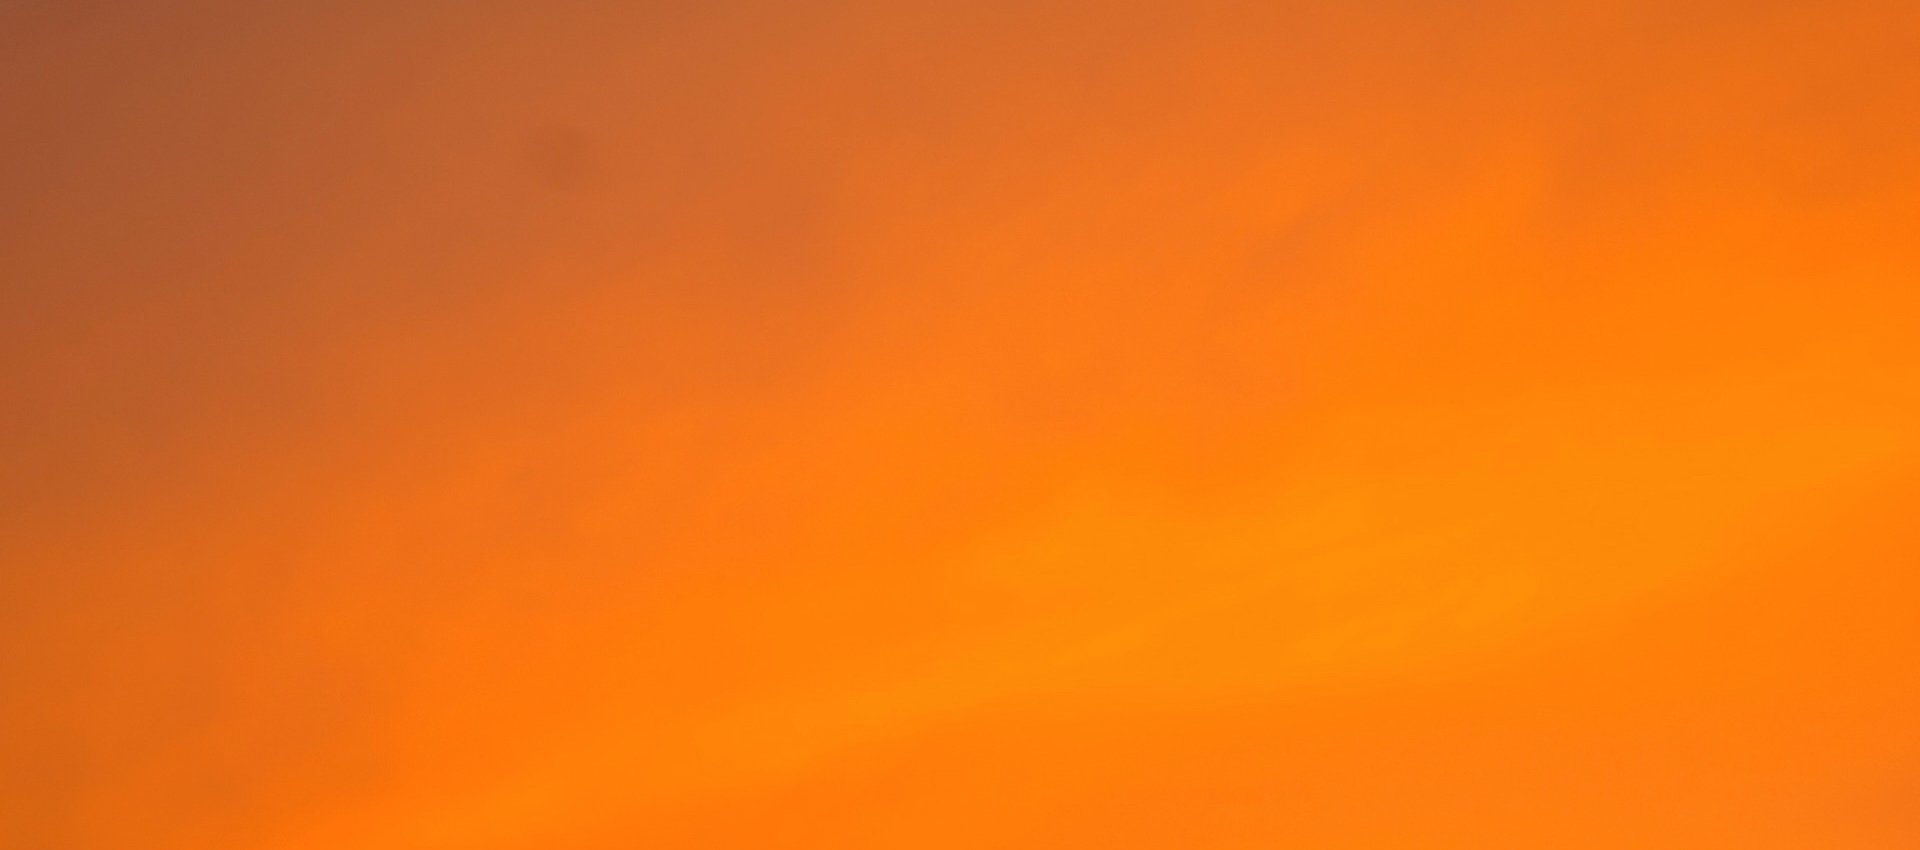 Лучшие фоны оранжевый профиля